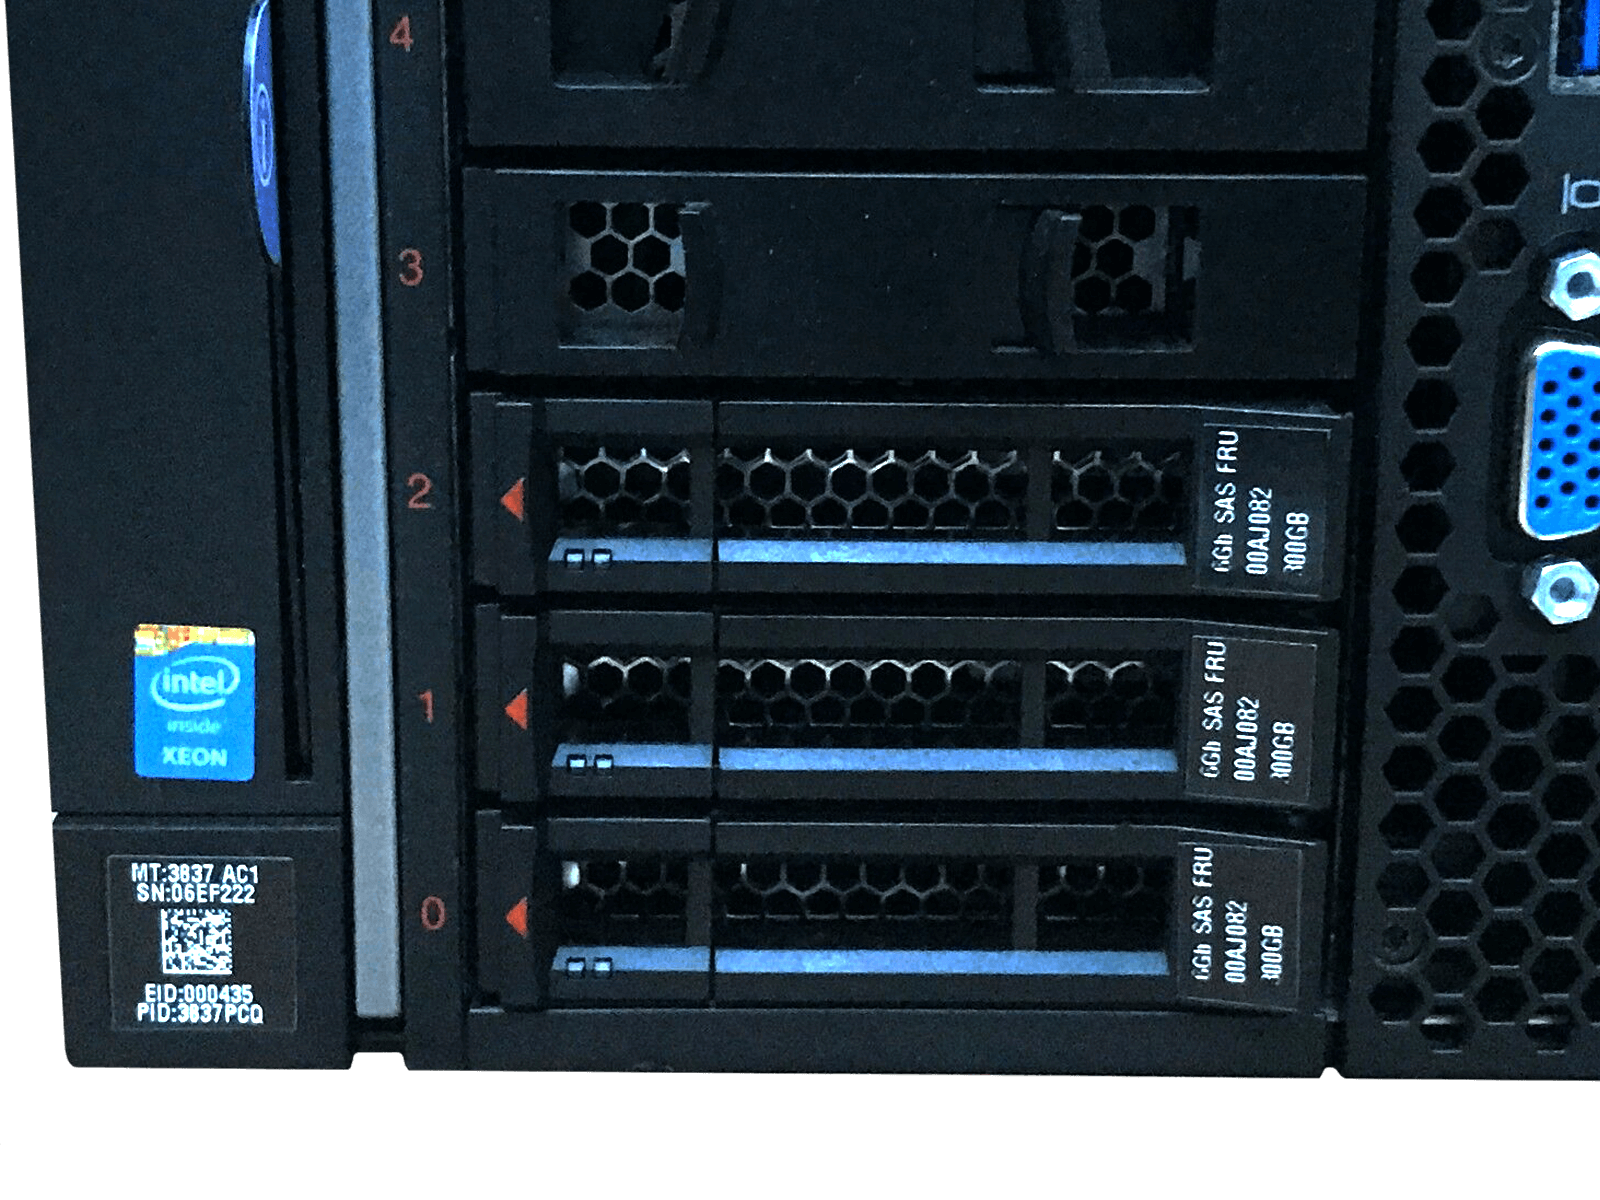 IBM x3850 X6 Server 4x Xeon E7-8870 v4 512GB DDR4 RAM 3x 300GB 10K 4x 1400W PSU